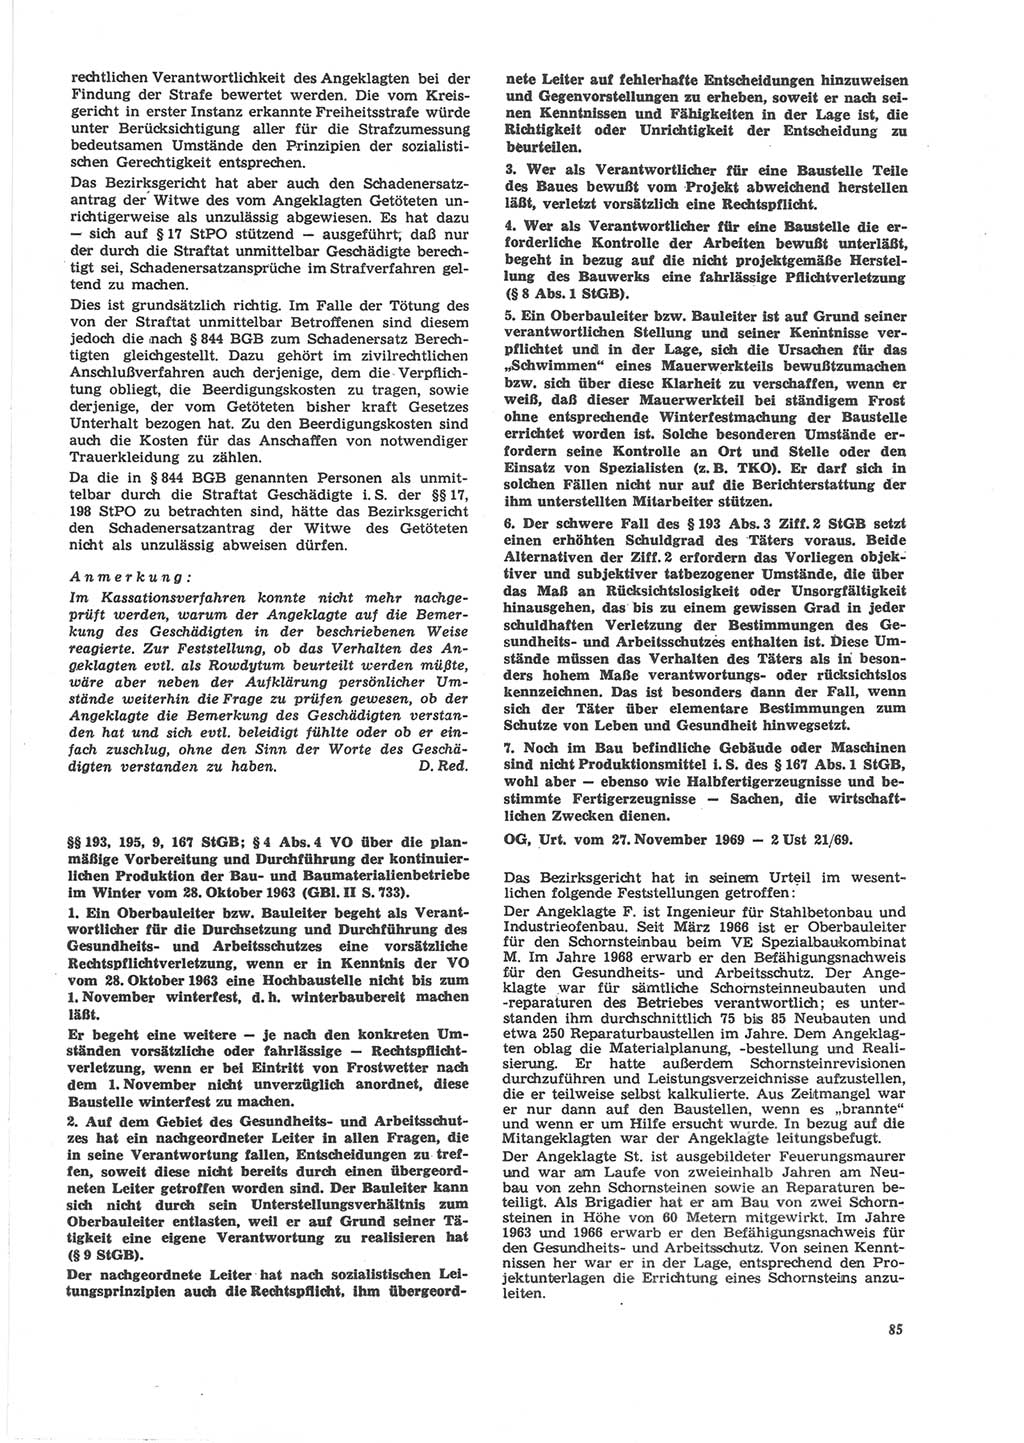 Neue Justiz (NJ), Zeitschrift für Recht und Rechtswissenschaft [Deutsche Demokratische Republik (DDR)], 24. Jahrgang 1970, Seite 85 (NJ DDR 1970, S. 85)